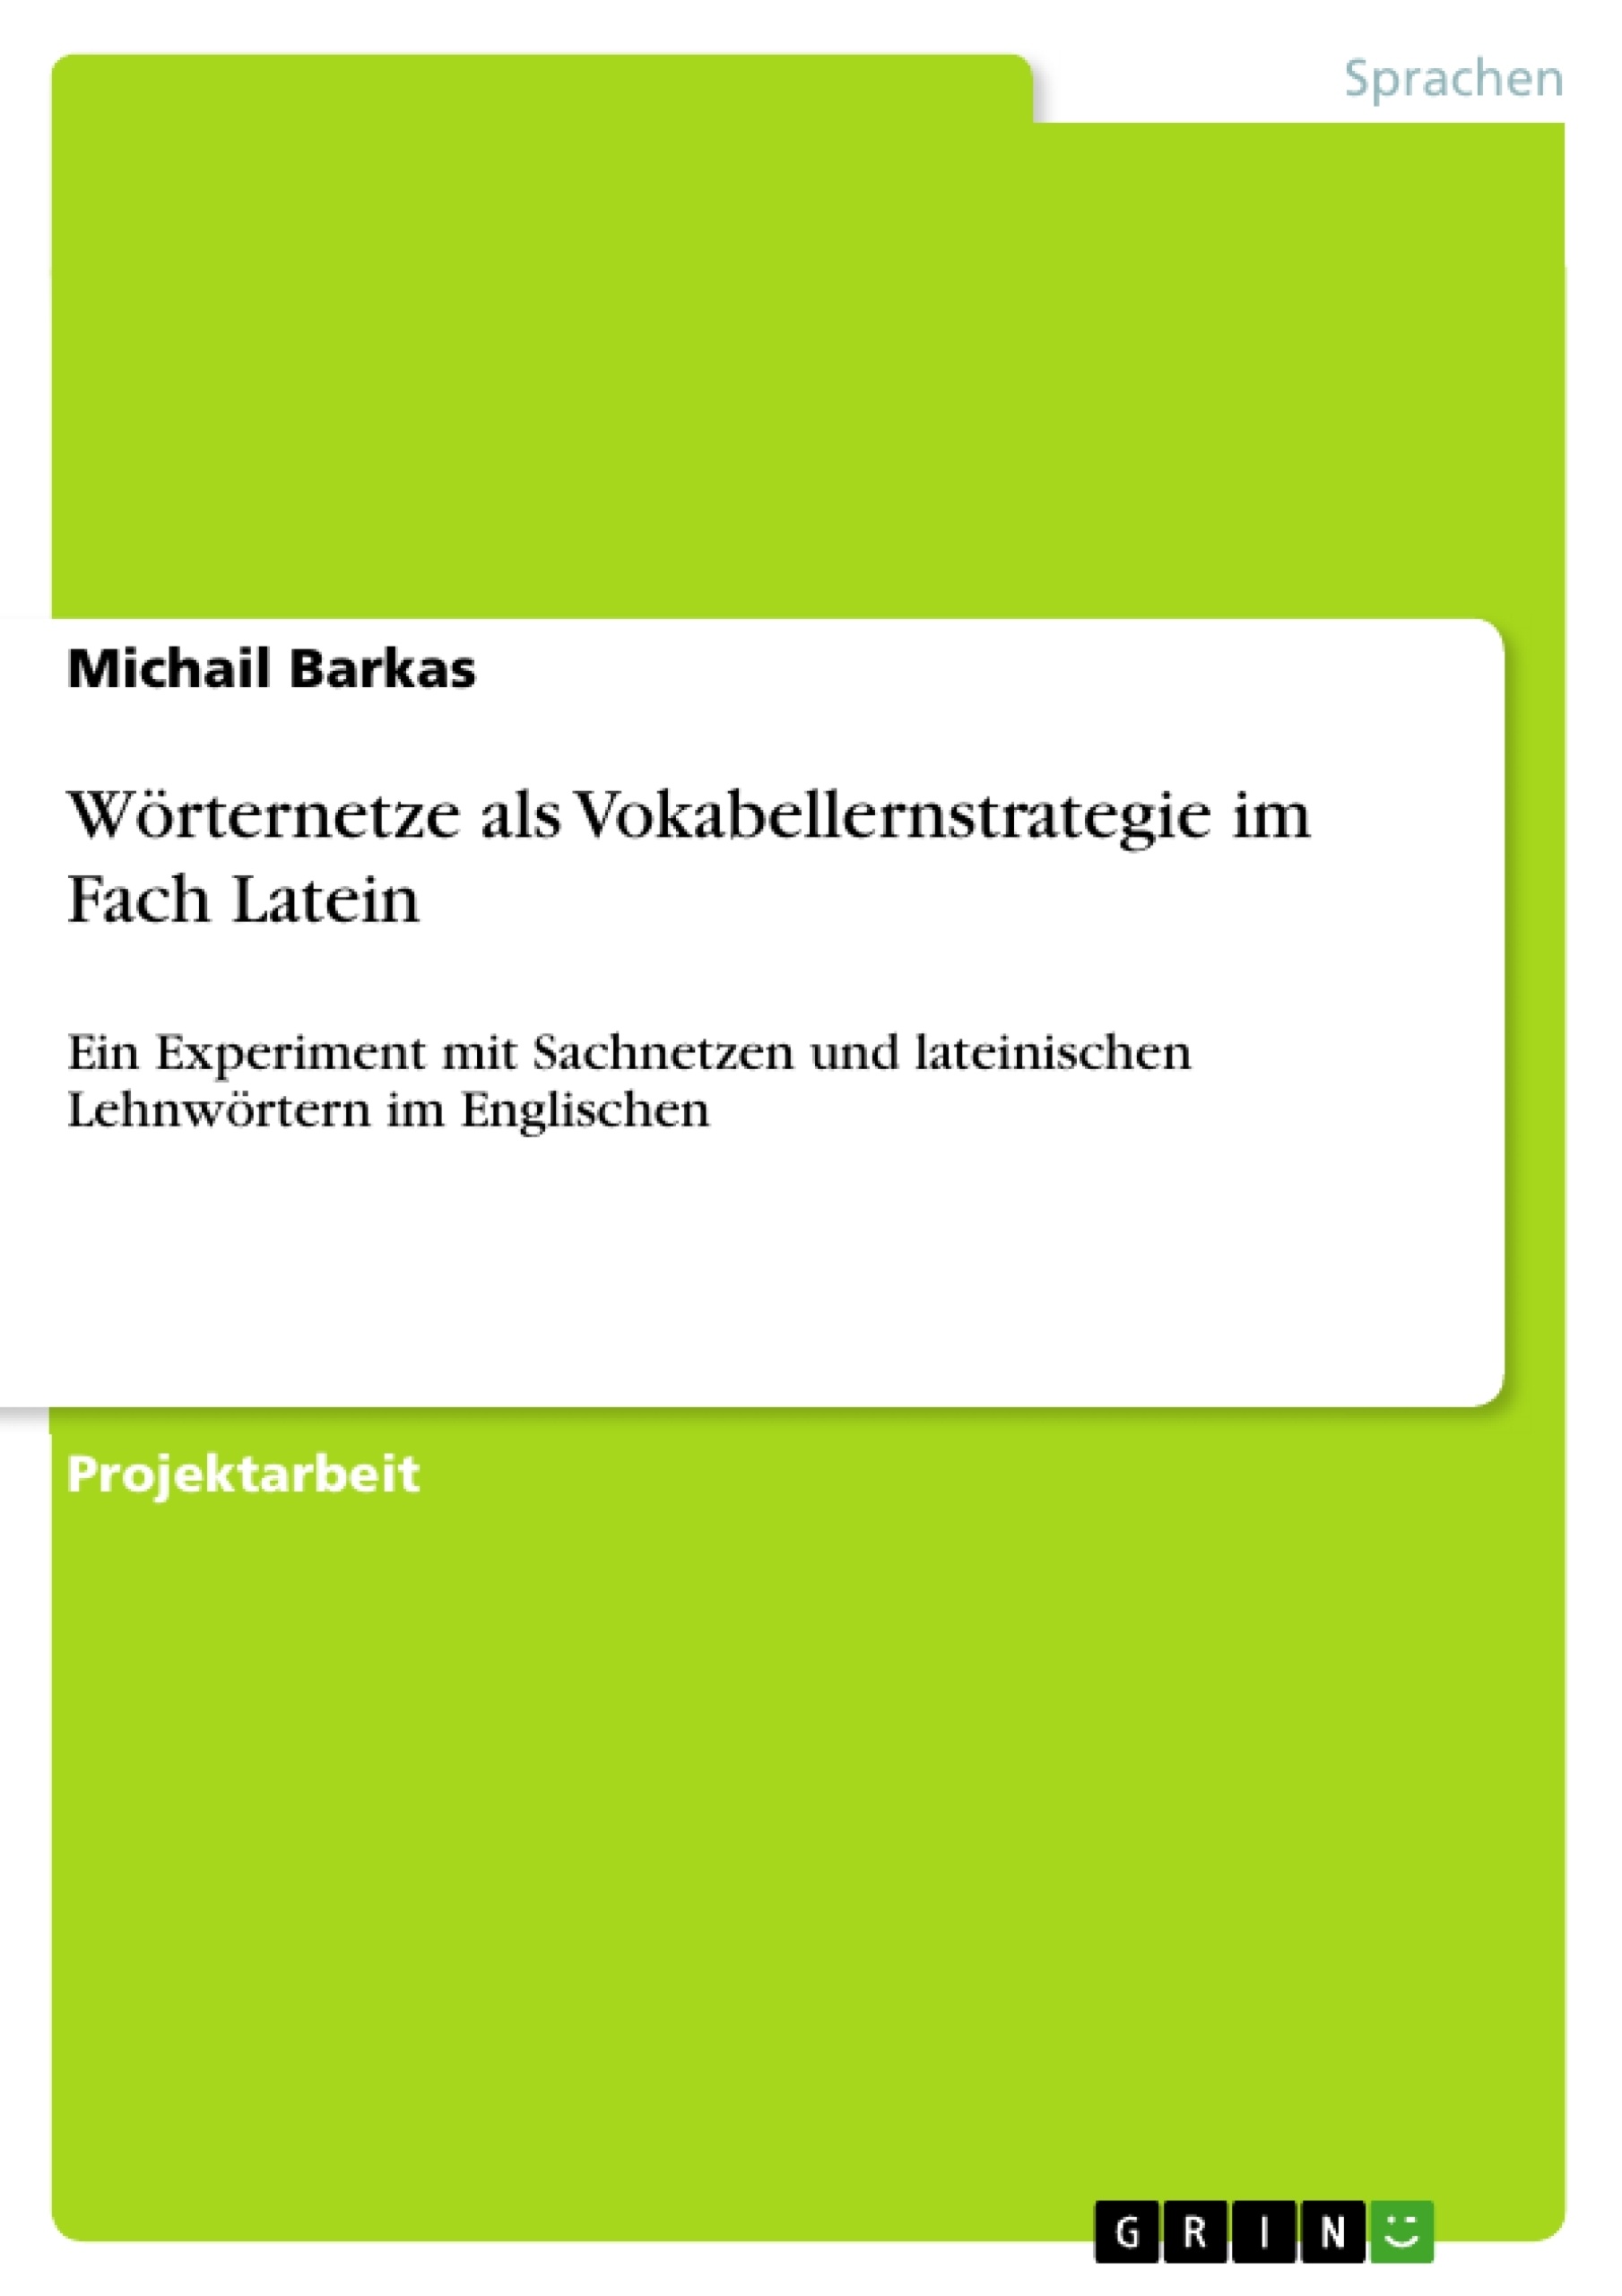 Titre: Wörternetze als Vokabellernstrategie im Fach Latein